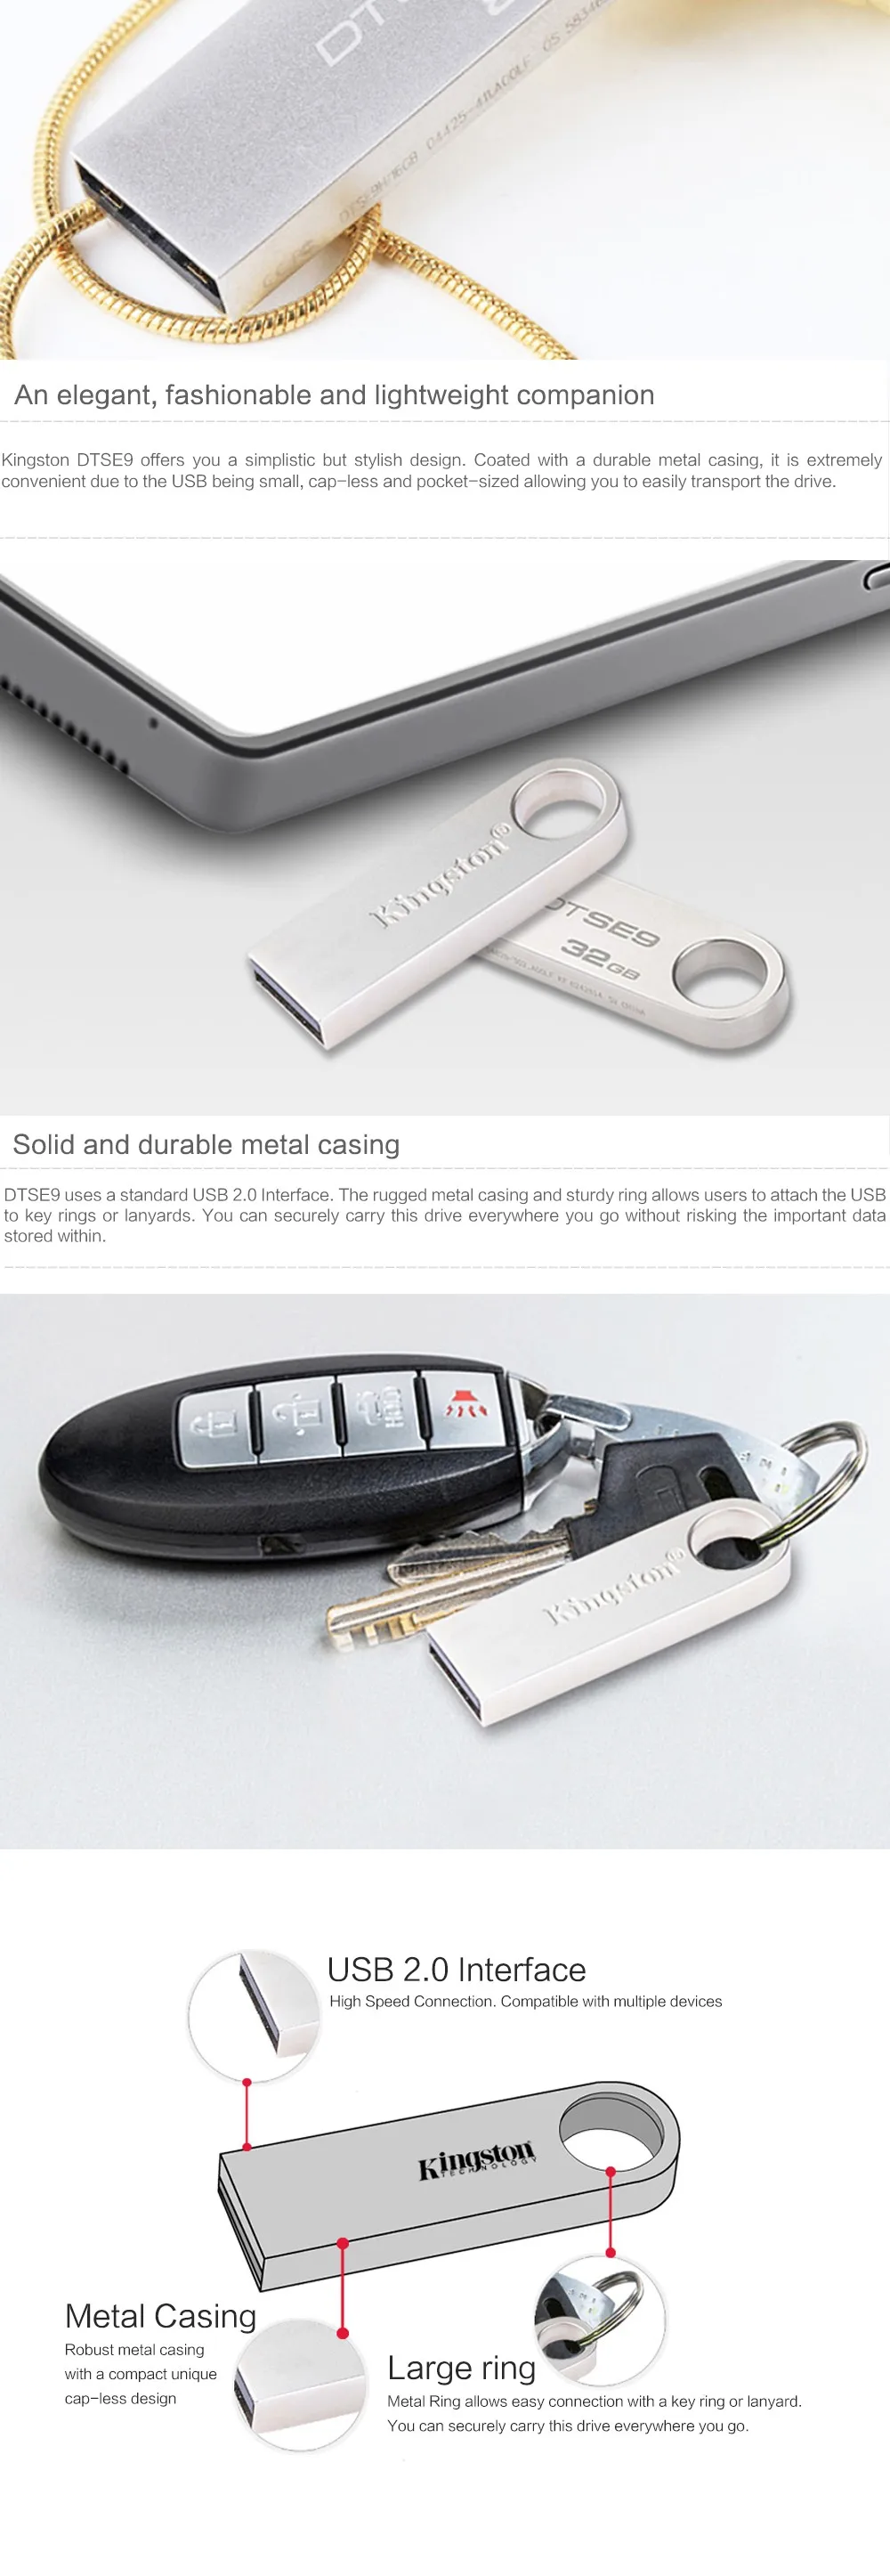 Kingston mini USB 2,0 USB флэш-накопитель 32 ГБ флеш-накопители 16 ГБ 8 ГБ металлический материал DTSE9H usb-флэш-накопитель флешки